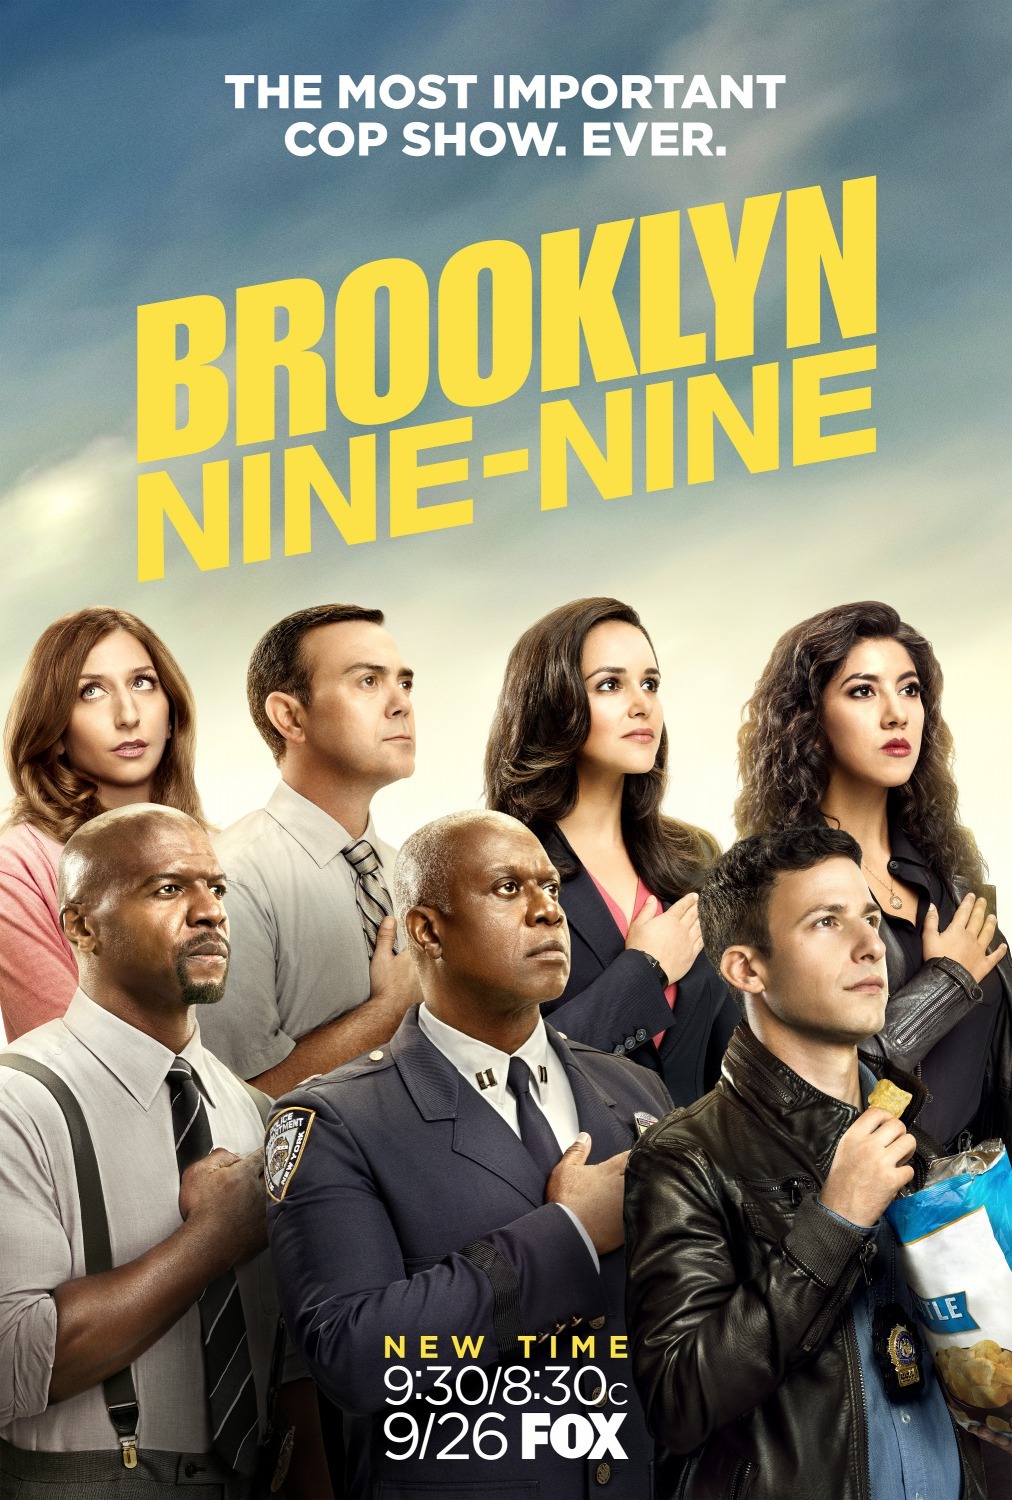 ดูหนังออนไลน์ฟรี Brooklyn Nine-Nine Season 4 EP.17 บรู๊คลินเก้า ปี 4 ตอนที่ 17